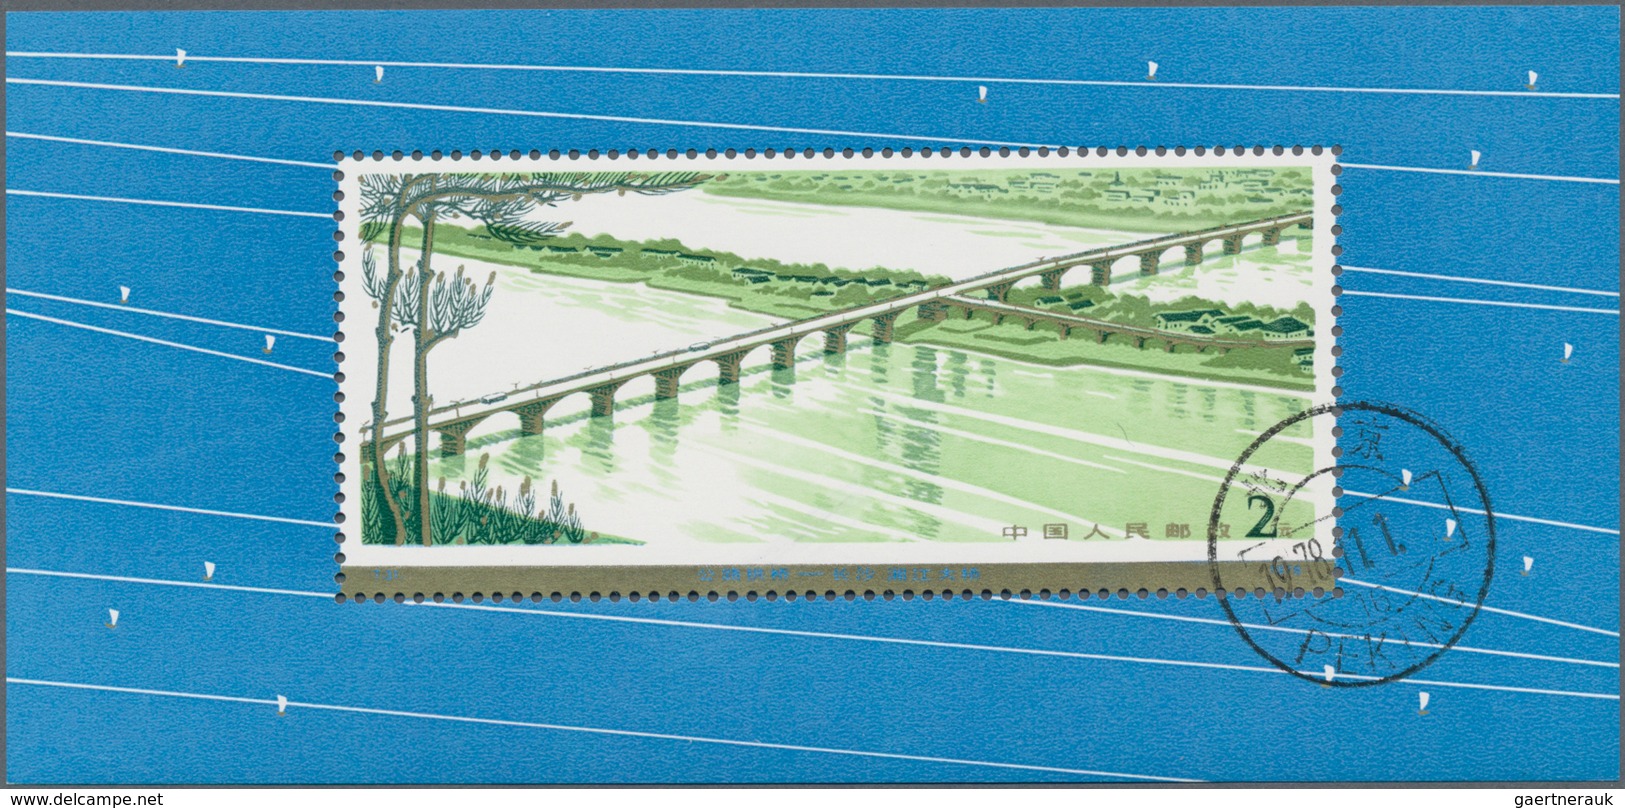 China - Volksrepublik: 1978, Bridges S/s (T31M), 2 Copies, CTO Used (Michel €440). - Lettres & Documents